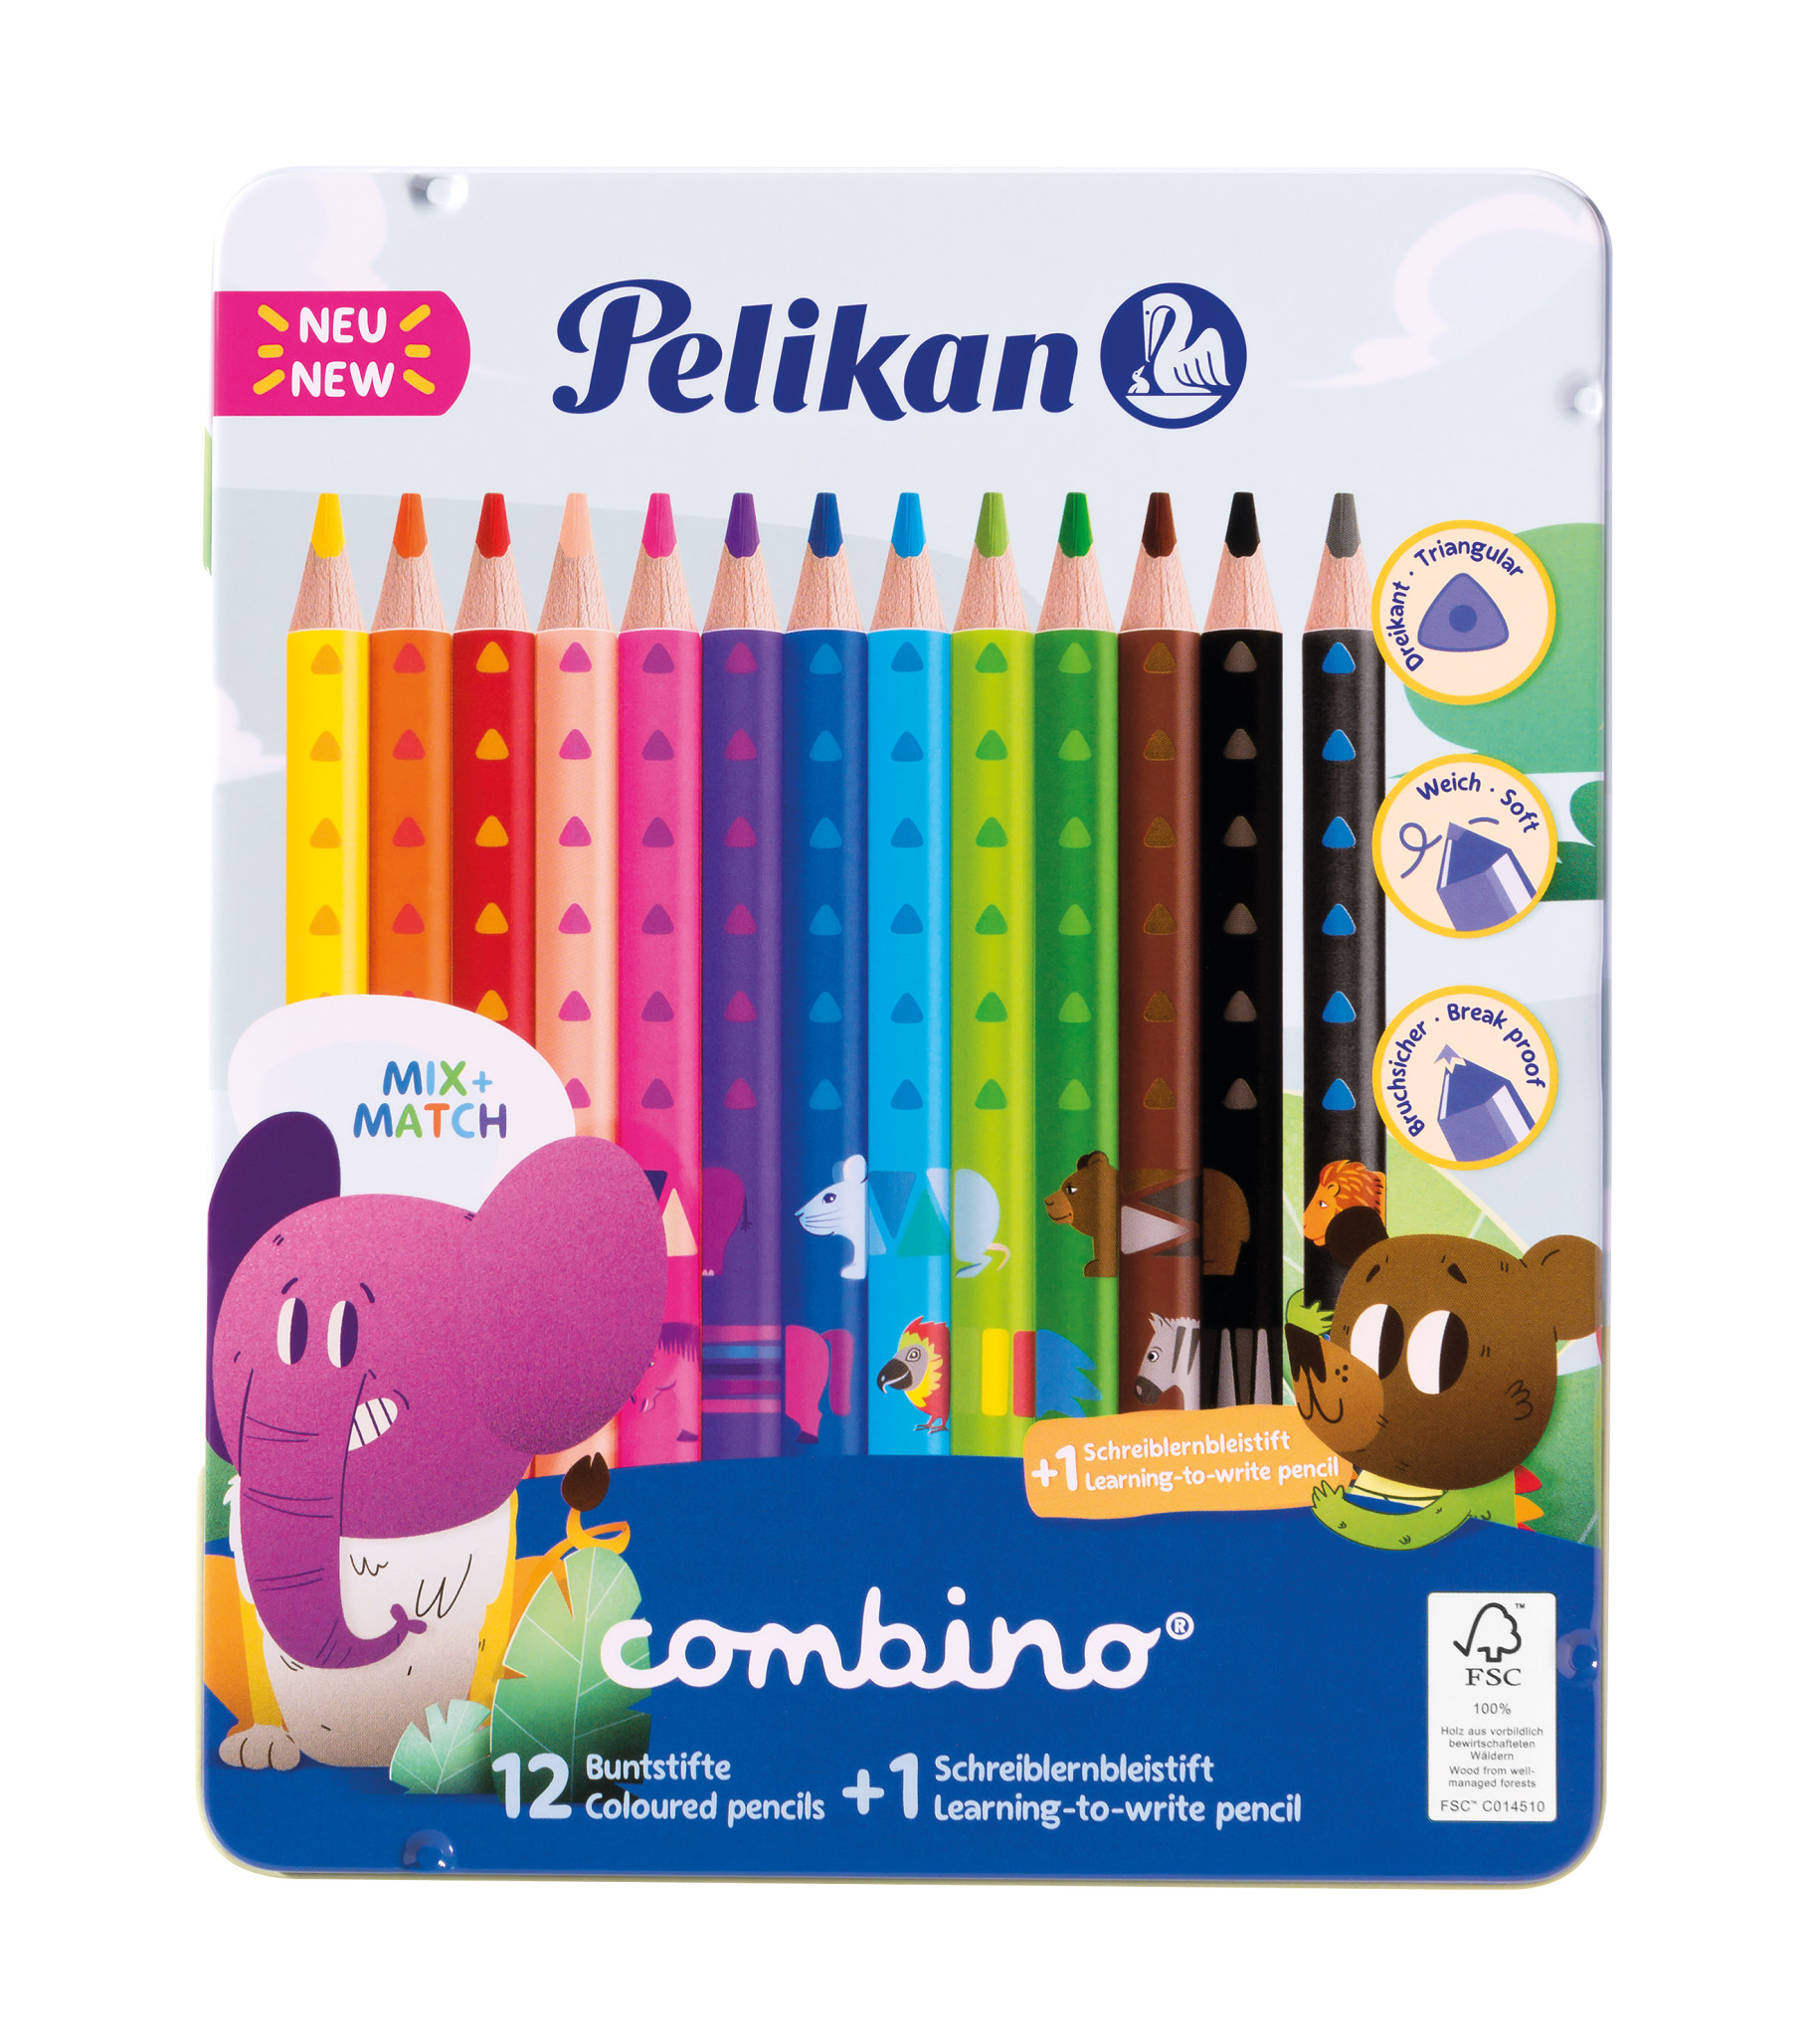 Pieštukai tribriauniai 13 spalvų COMBINO 811200 PELIKAN, R06-170